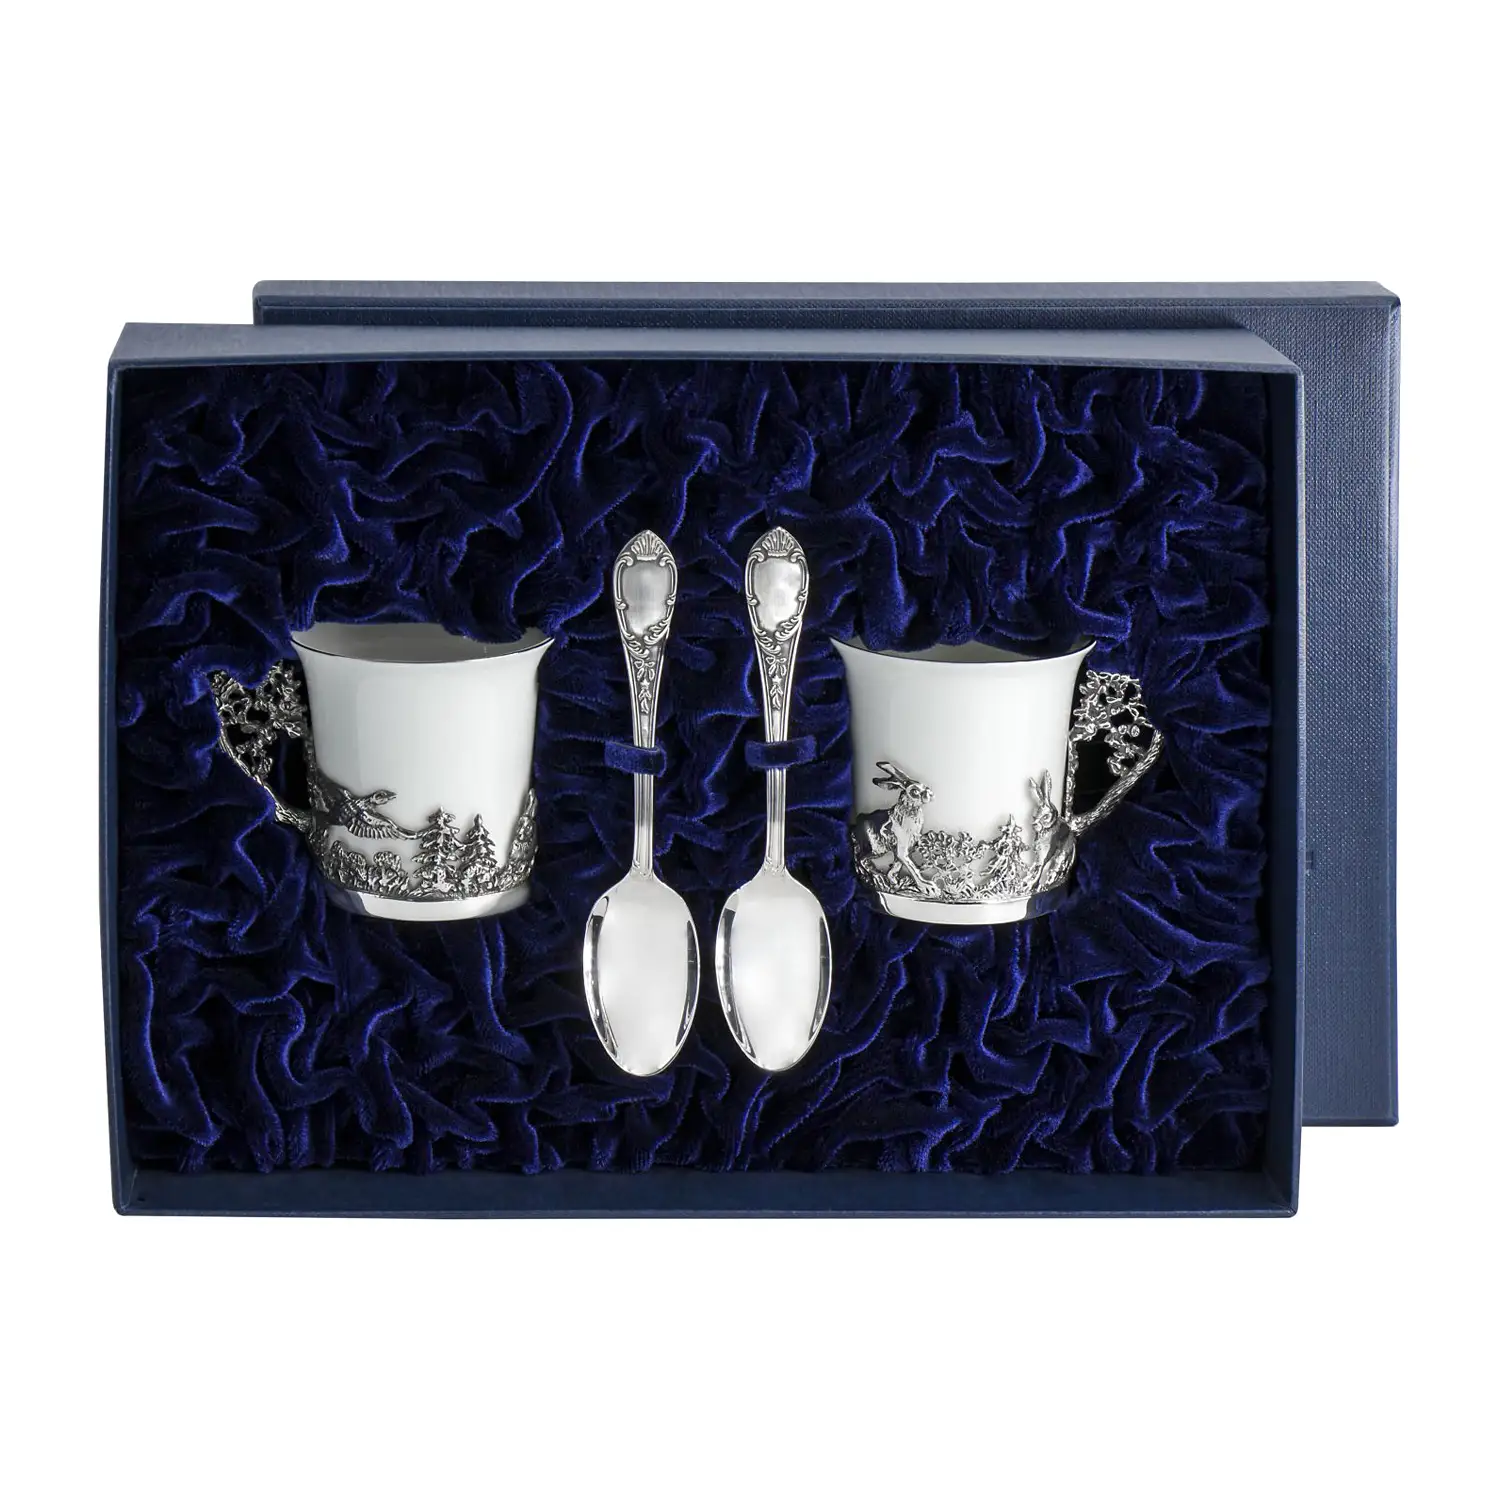 набор чашек кофейных зайцы ложки из серебра 4 предмета Набор кофейных чашек Зайцы: ложка, чашка (Серебро 925)